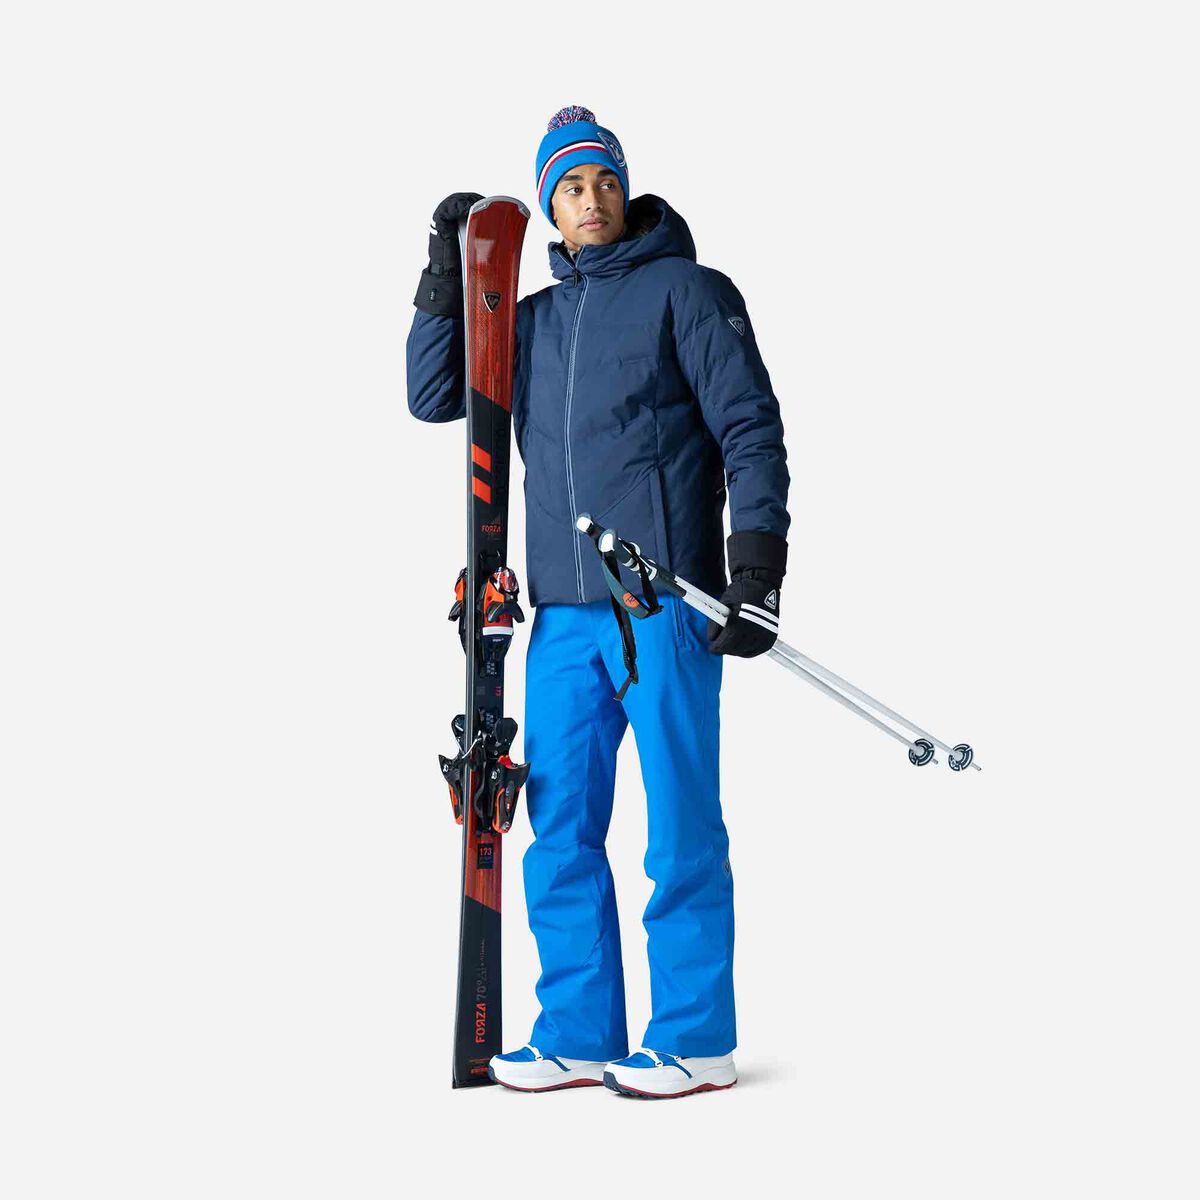 Vêtements de ski dans plusieurs couleurs et tailles